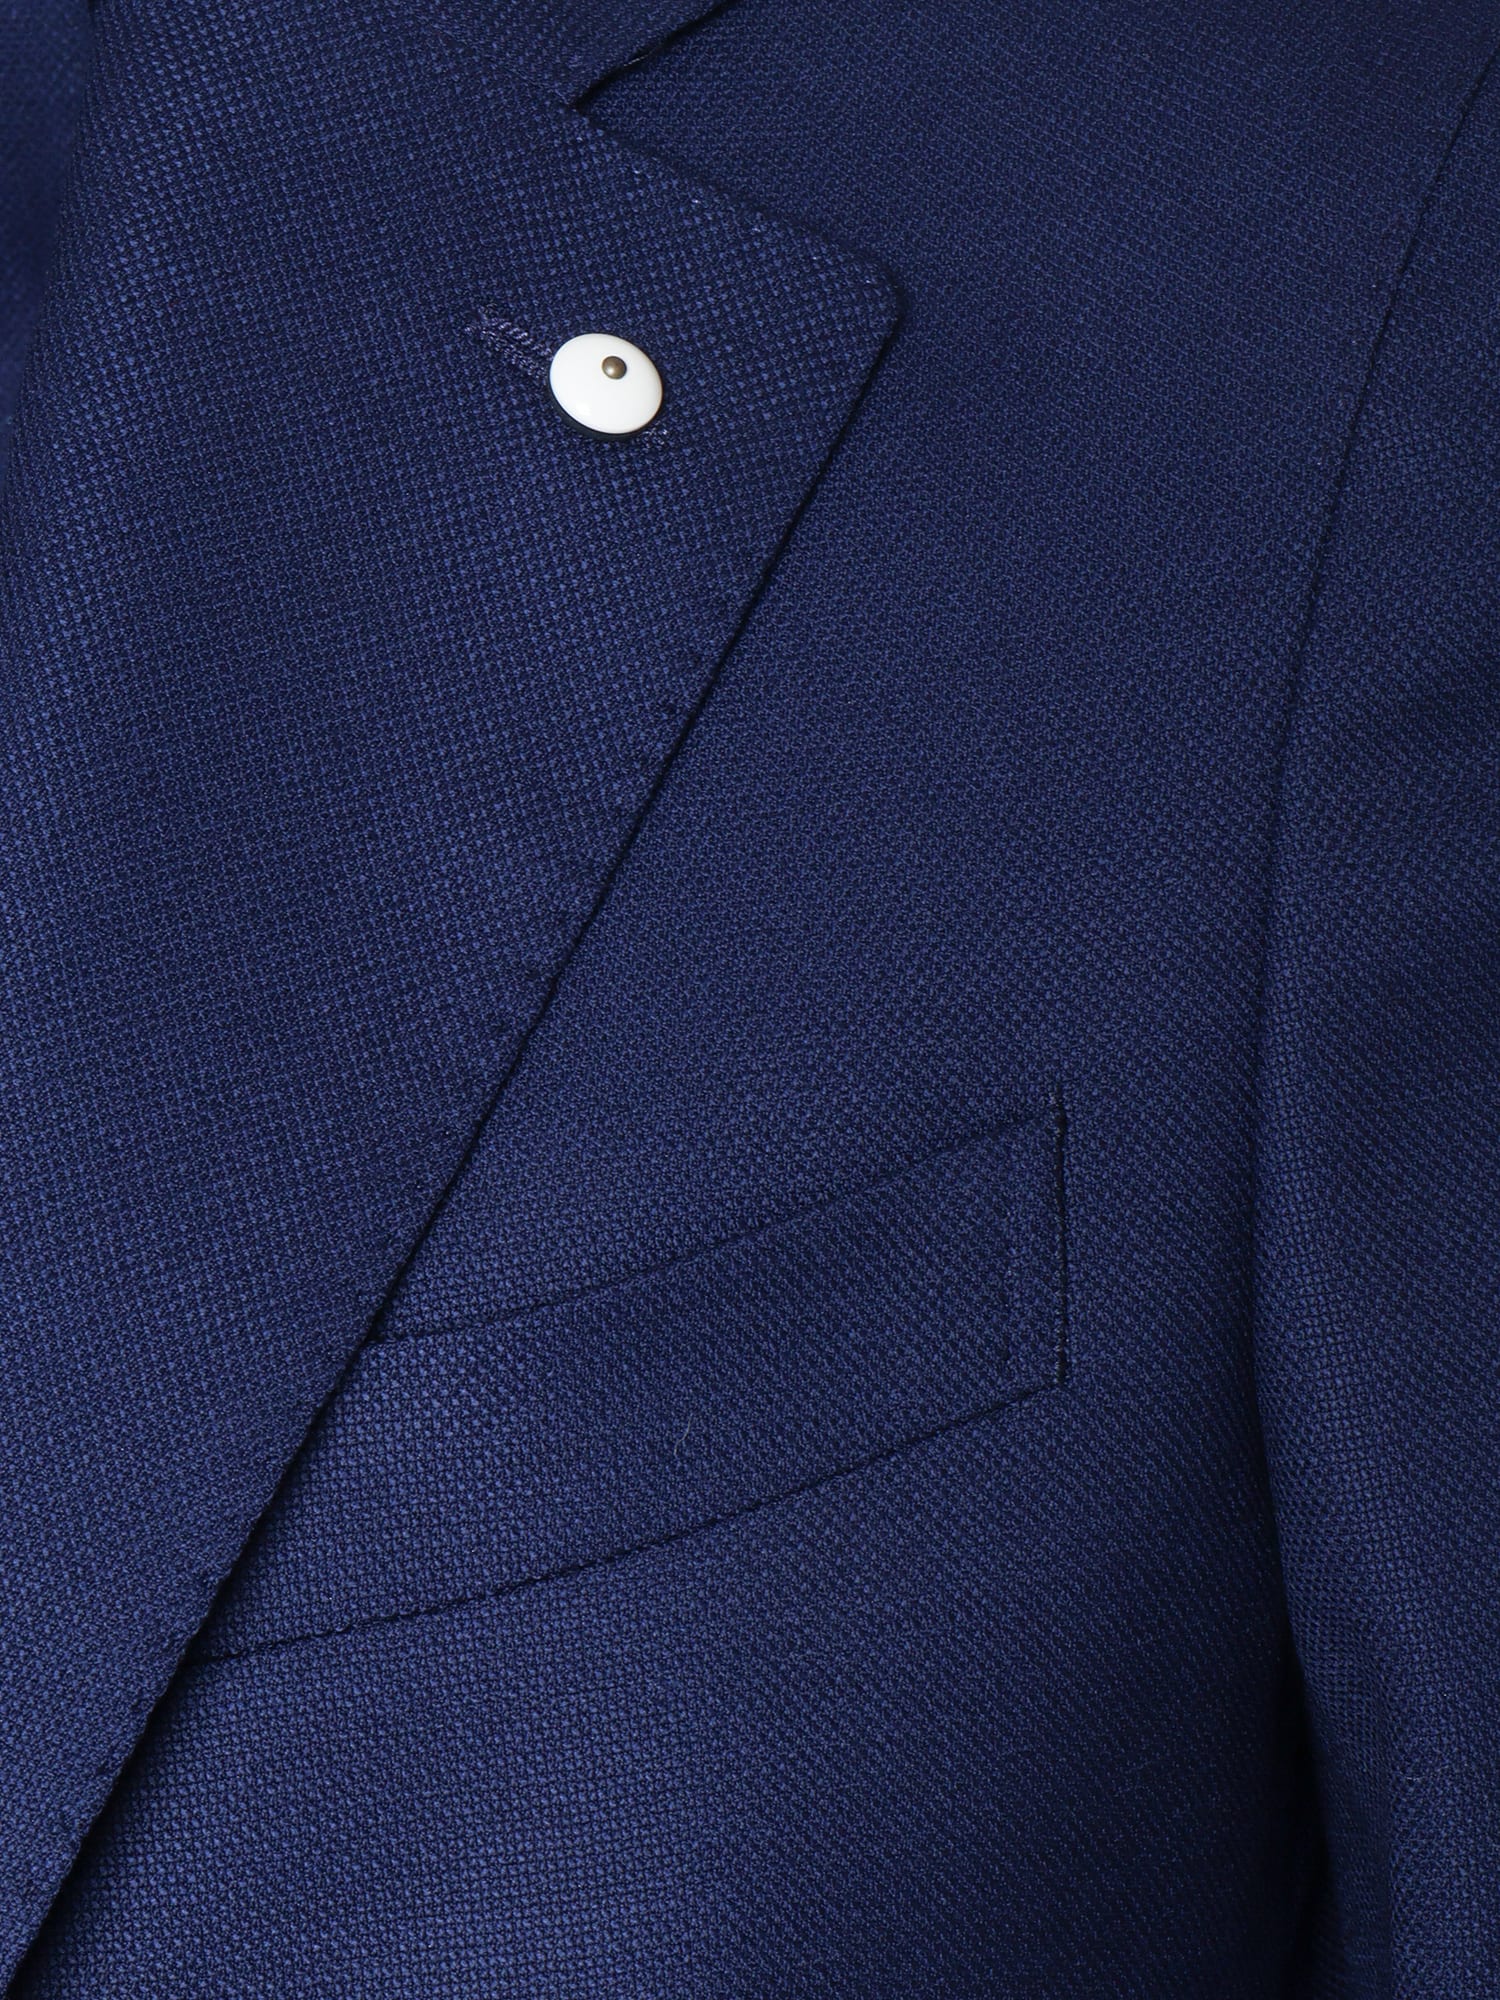 Shop L.b.m 1911 Blue Single-breasted Blazer